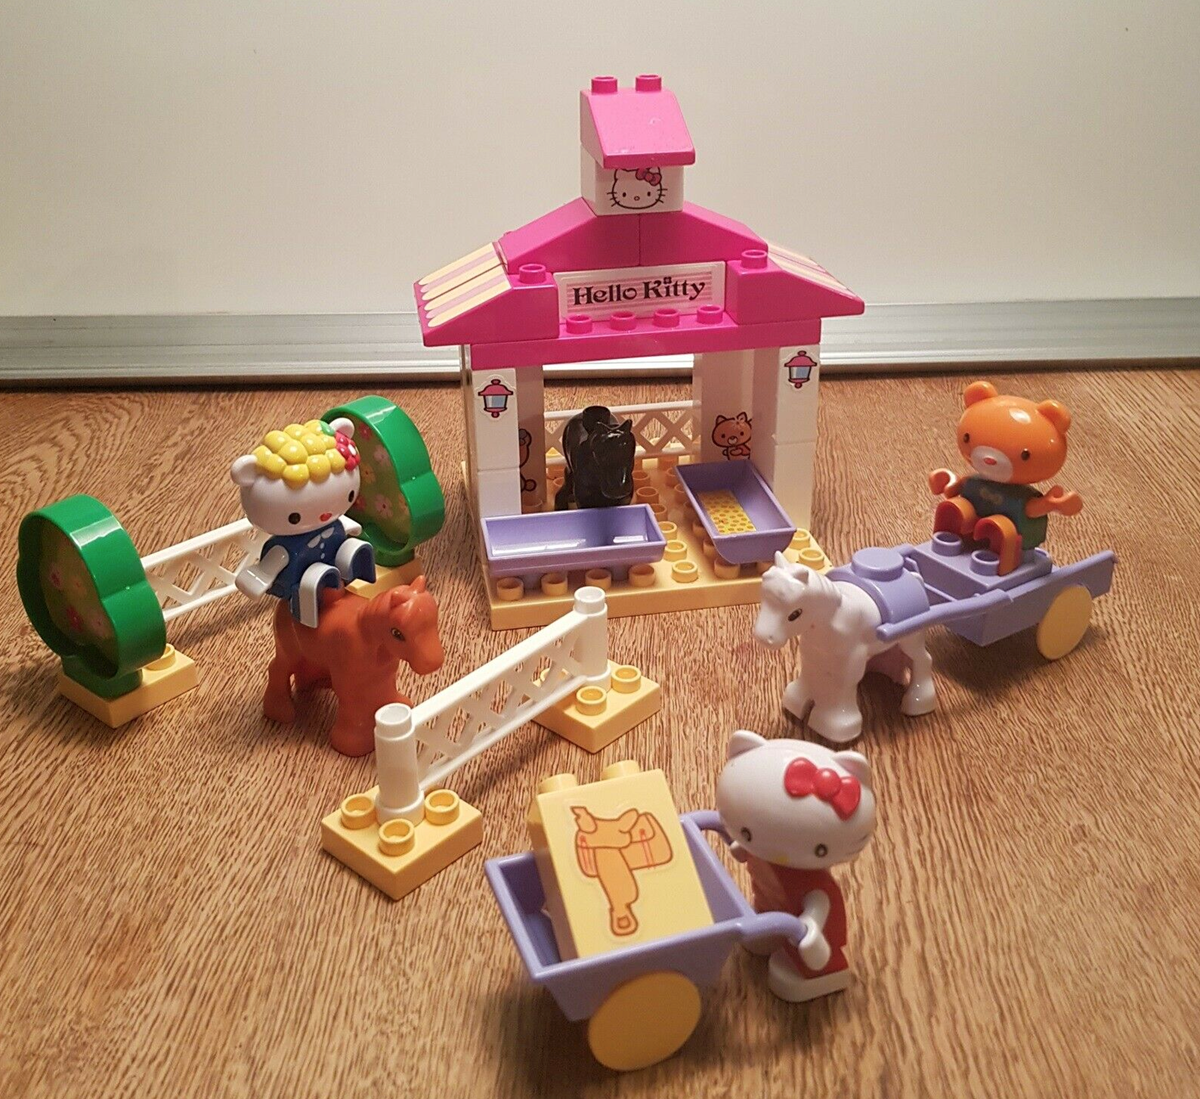 50 kroner skal du af med, hvis Hallo Kitty-Legoet her, som Arno fra Them har til salg, skal blive dit nye Lego